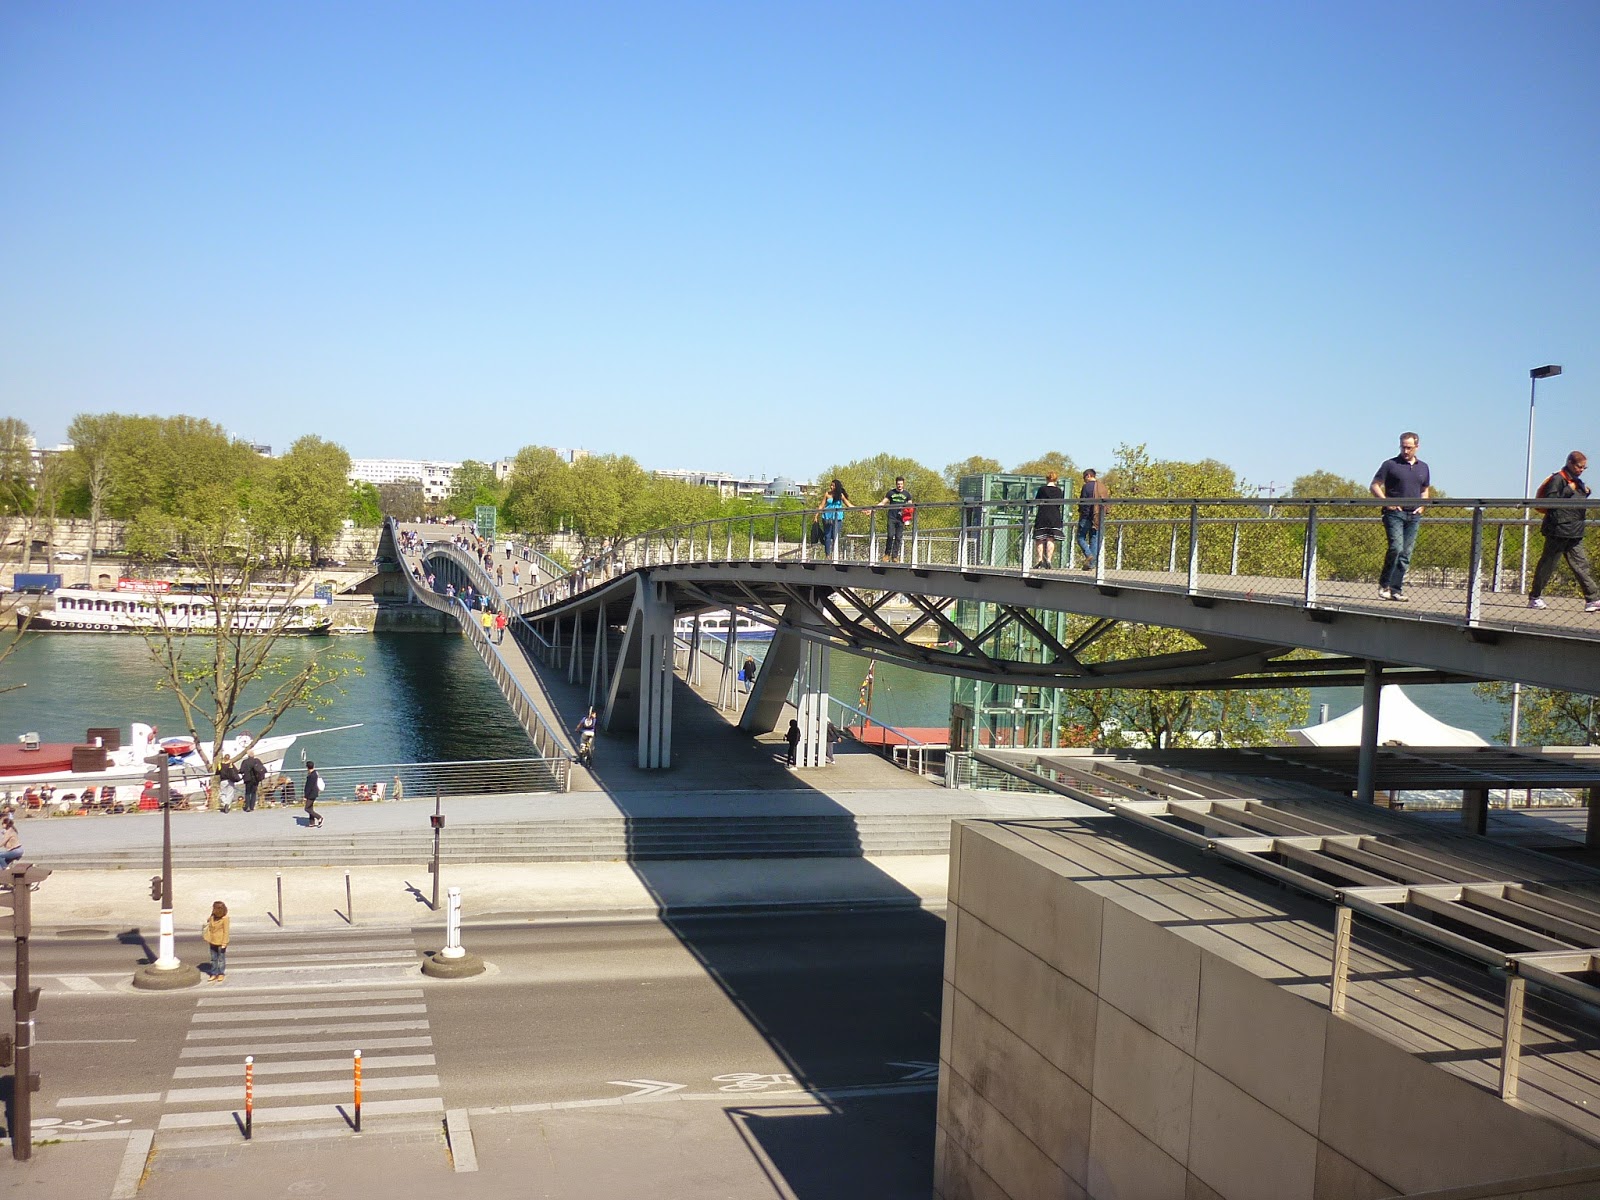 Aquarelle A Paris ﾊﾟﾘで水彩画 ｼﾓｰﾇ ﾄﾞ ﾎﾞｰｳﾞｫﾜｰﾙ橋 Le Pont De Simone De Beauvoir